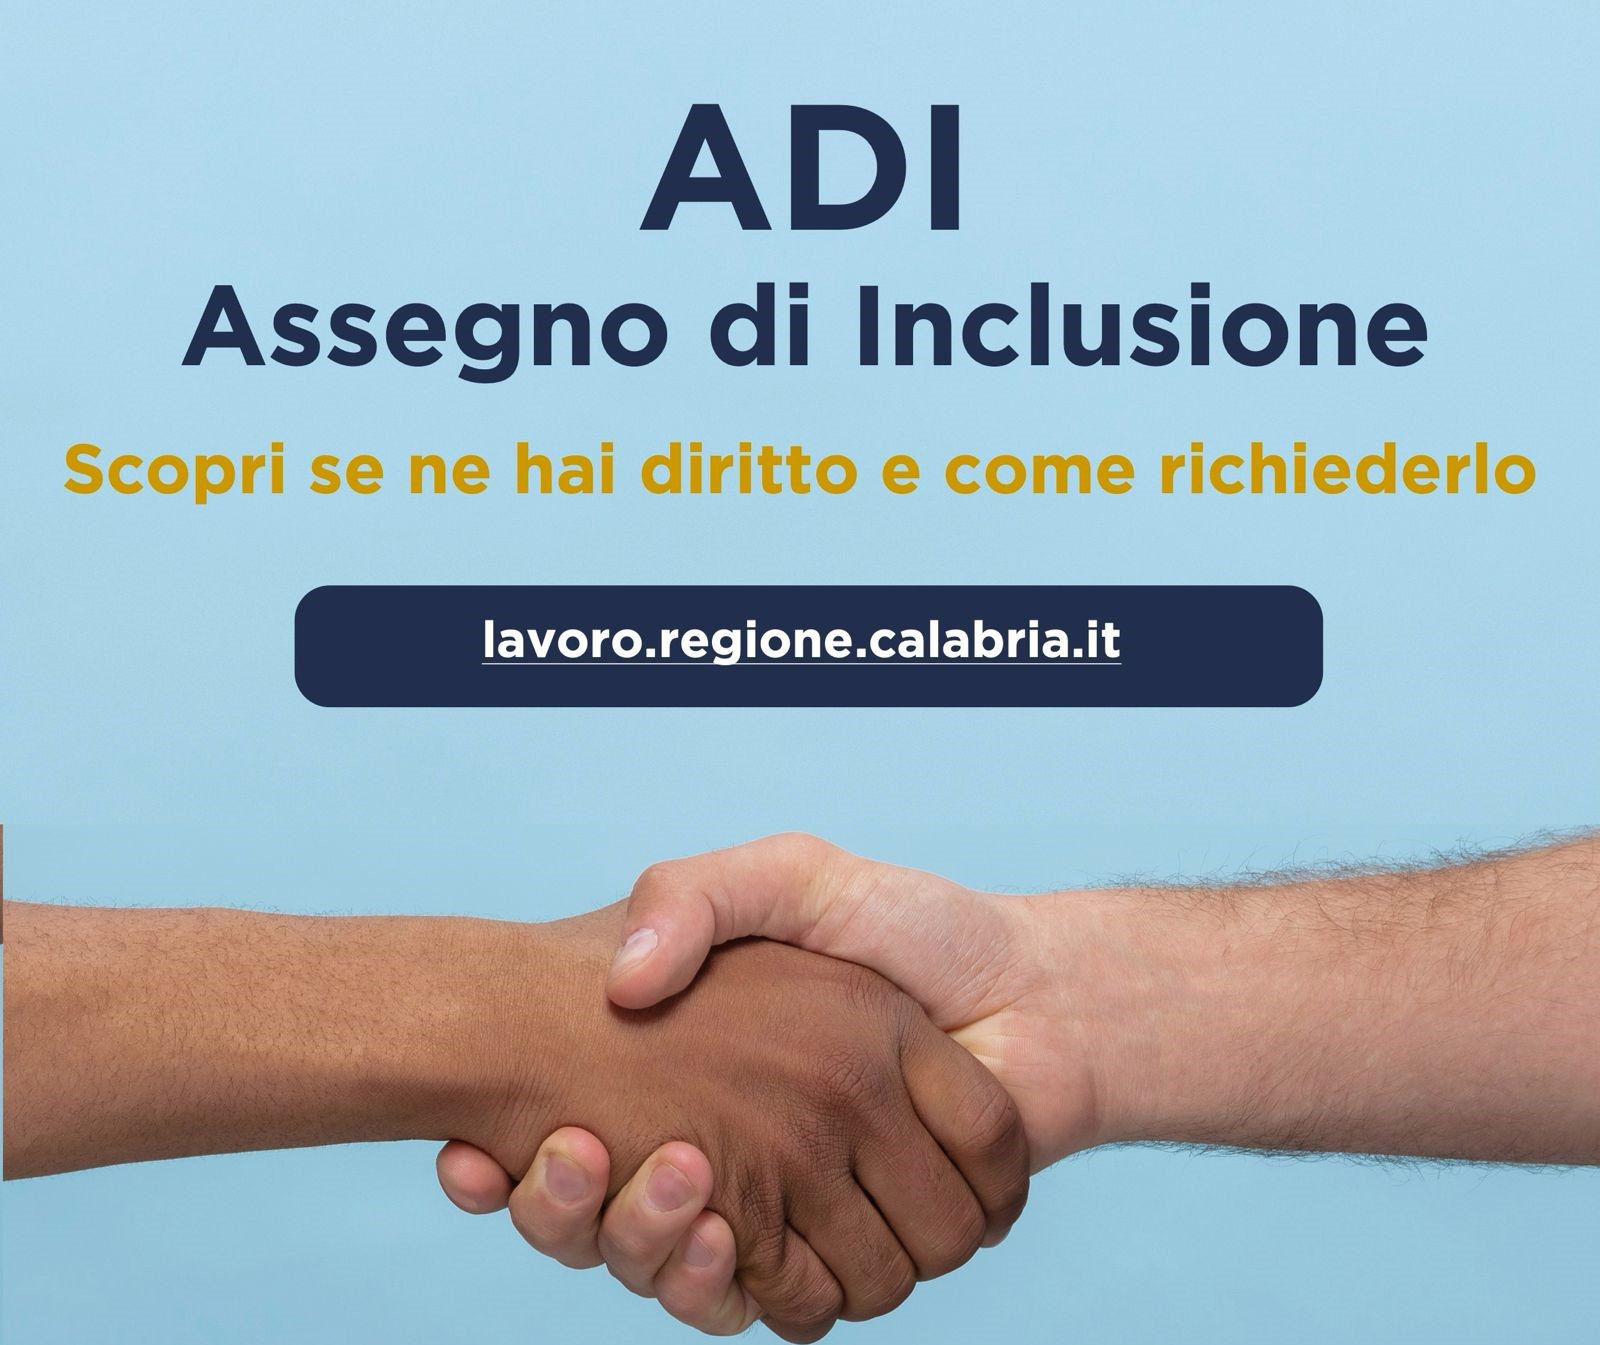 Osservatorio INPS sull’ADI: in Calabria finora coinvolti 52.411 nuclei familiari